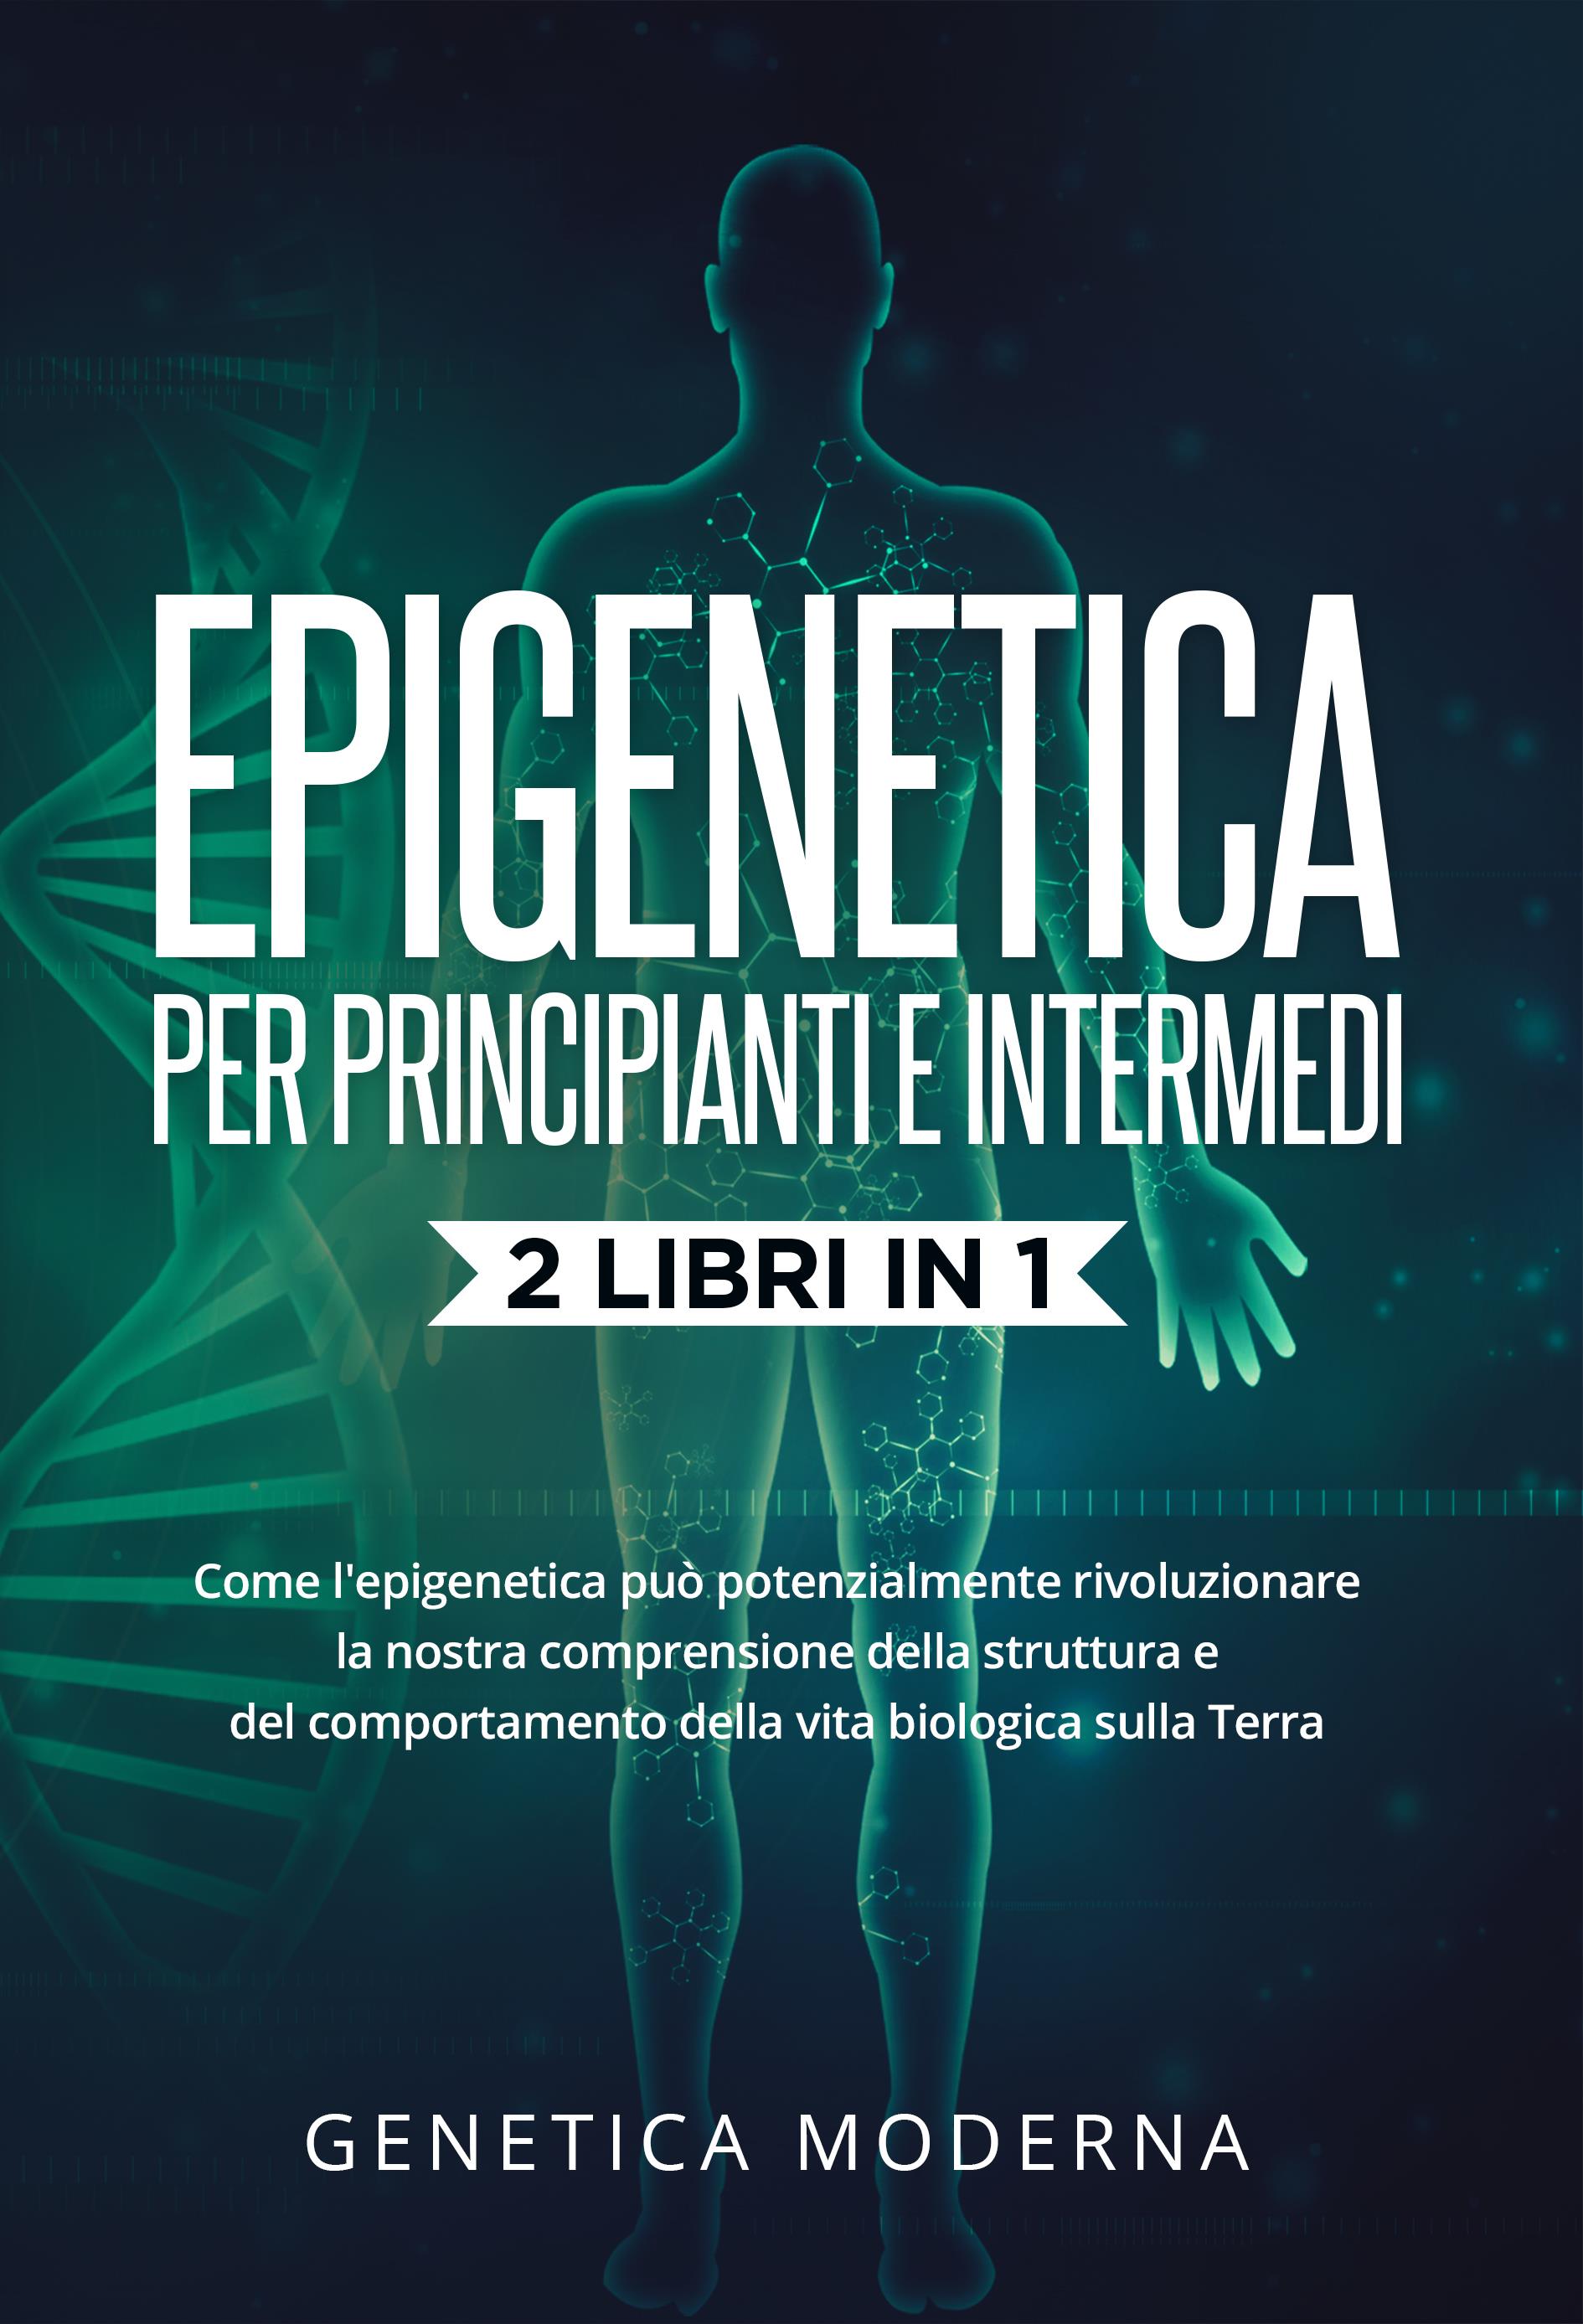 Epigenetica  Per Principianti e Intermedi (2 Libri in 1). Come l'epigenetica può potenzialmente rivoluzionare la nostra comprensione della struttura e del comportamento della vita biologica sulla Terra